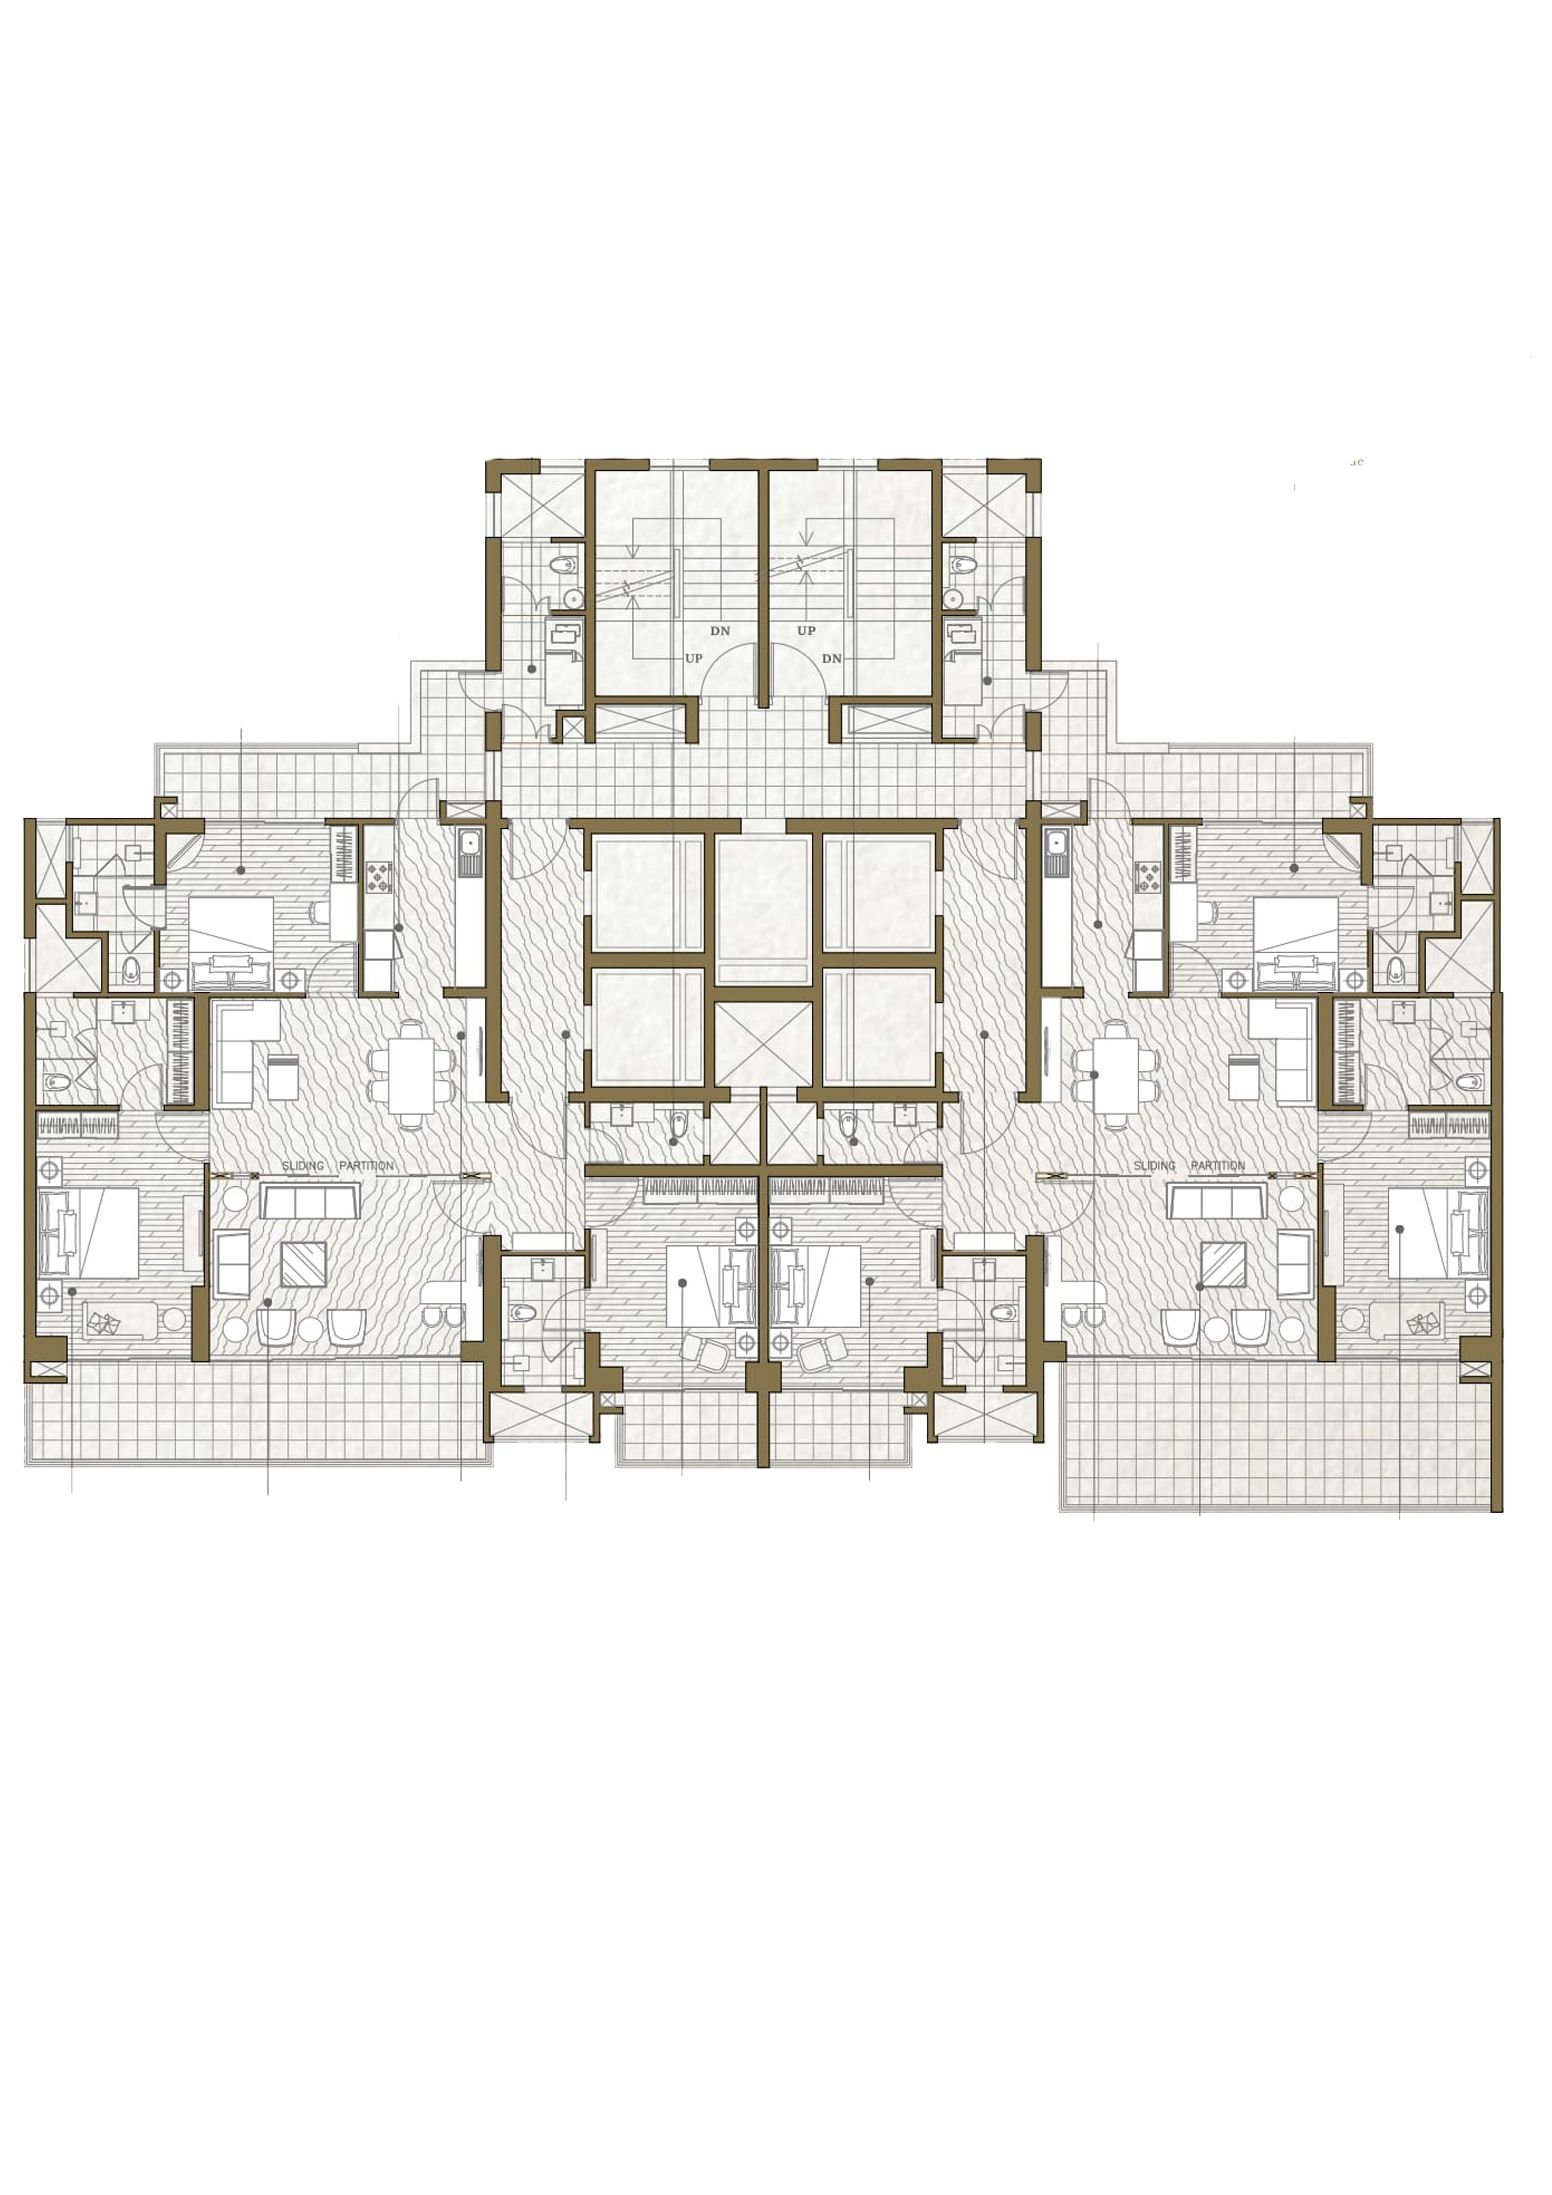 Condominium 1C (Wing 8)